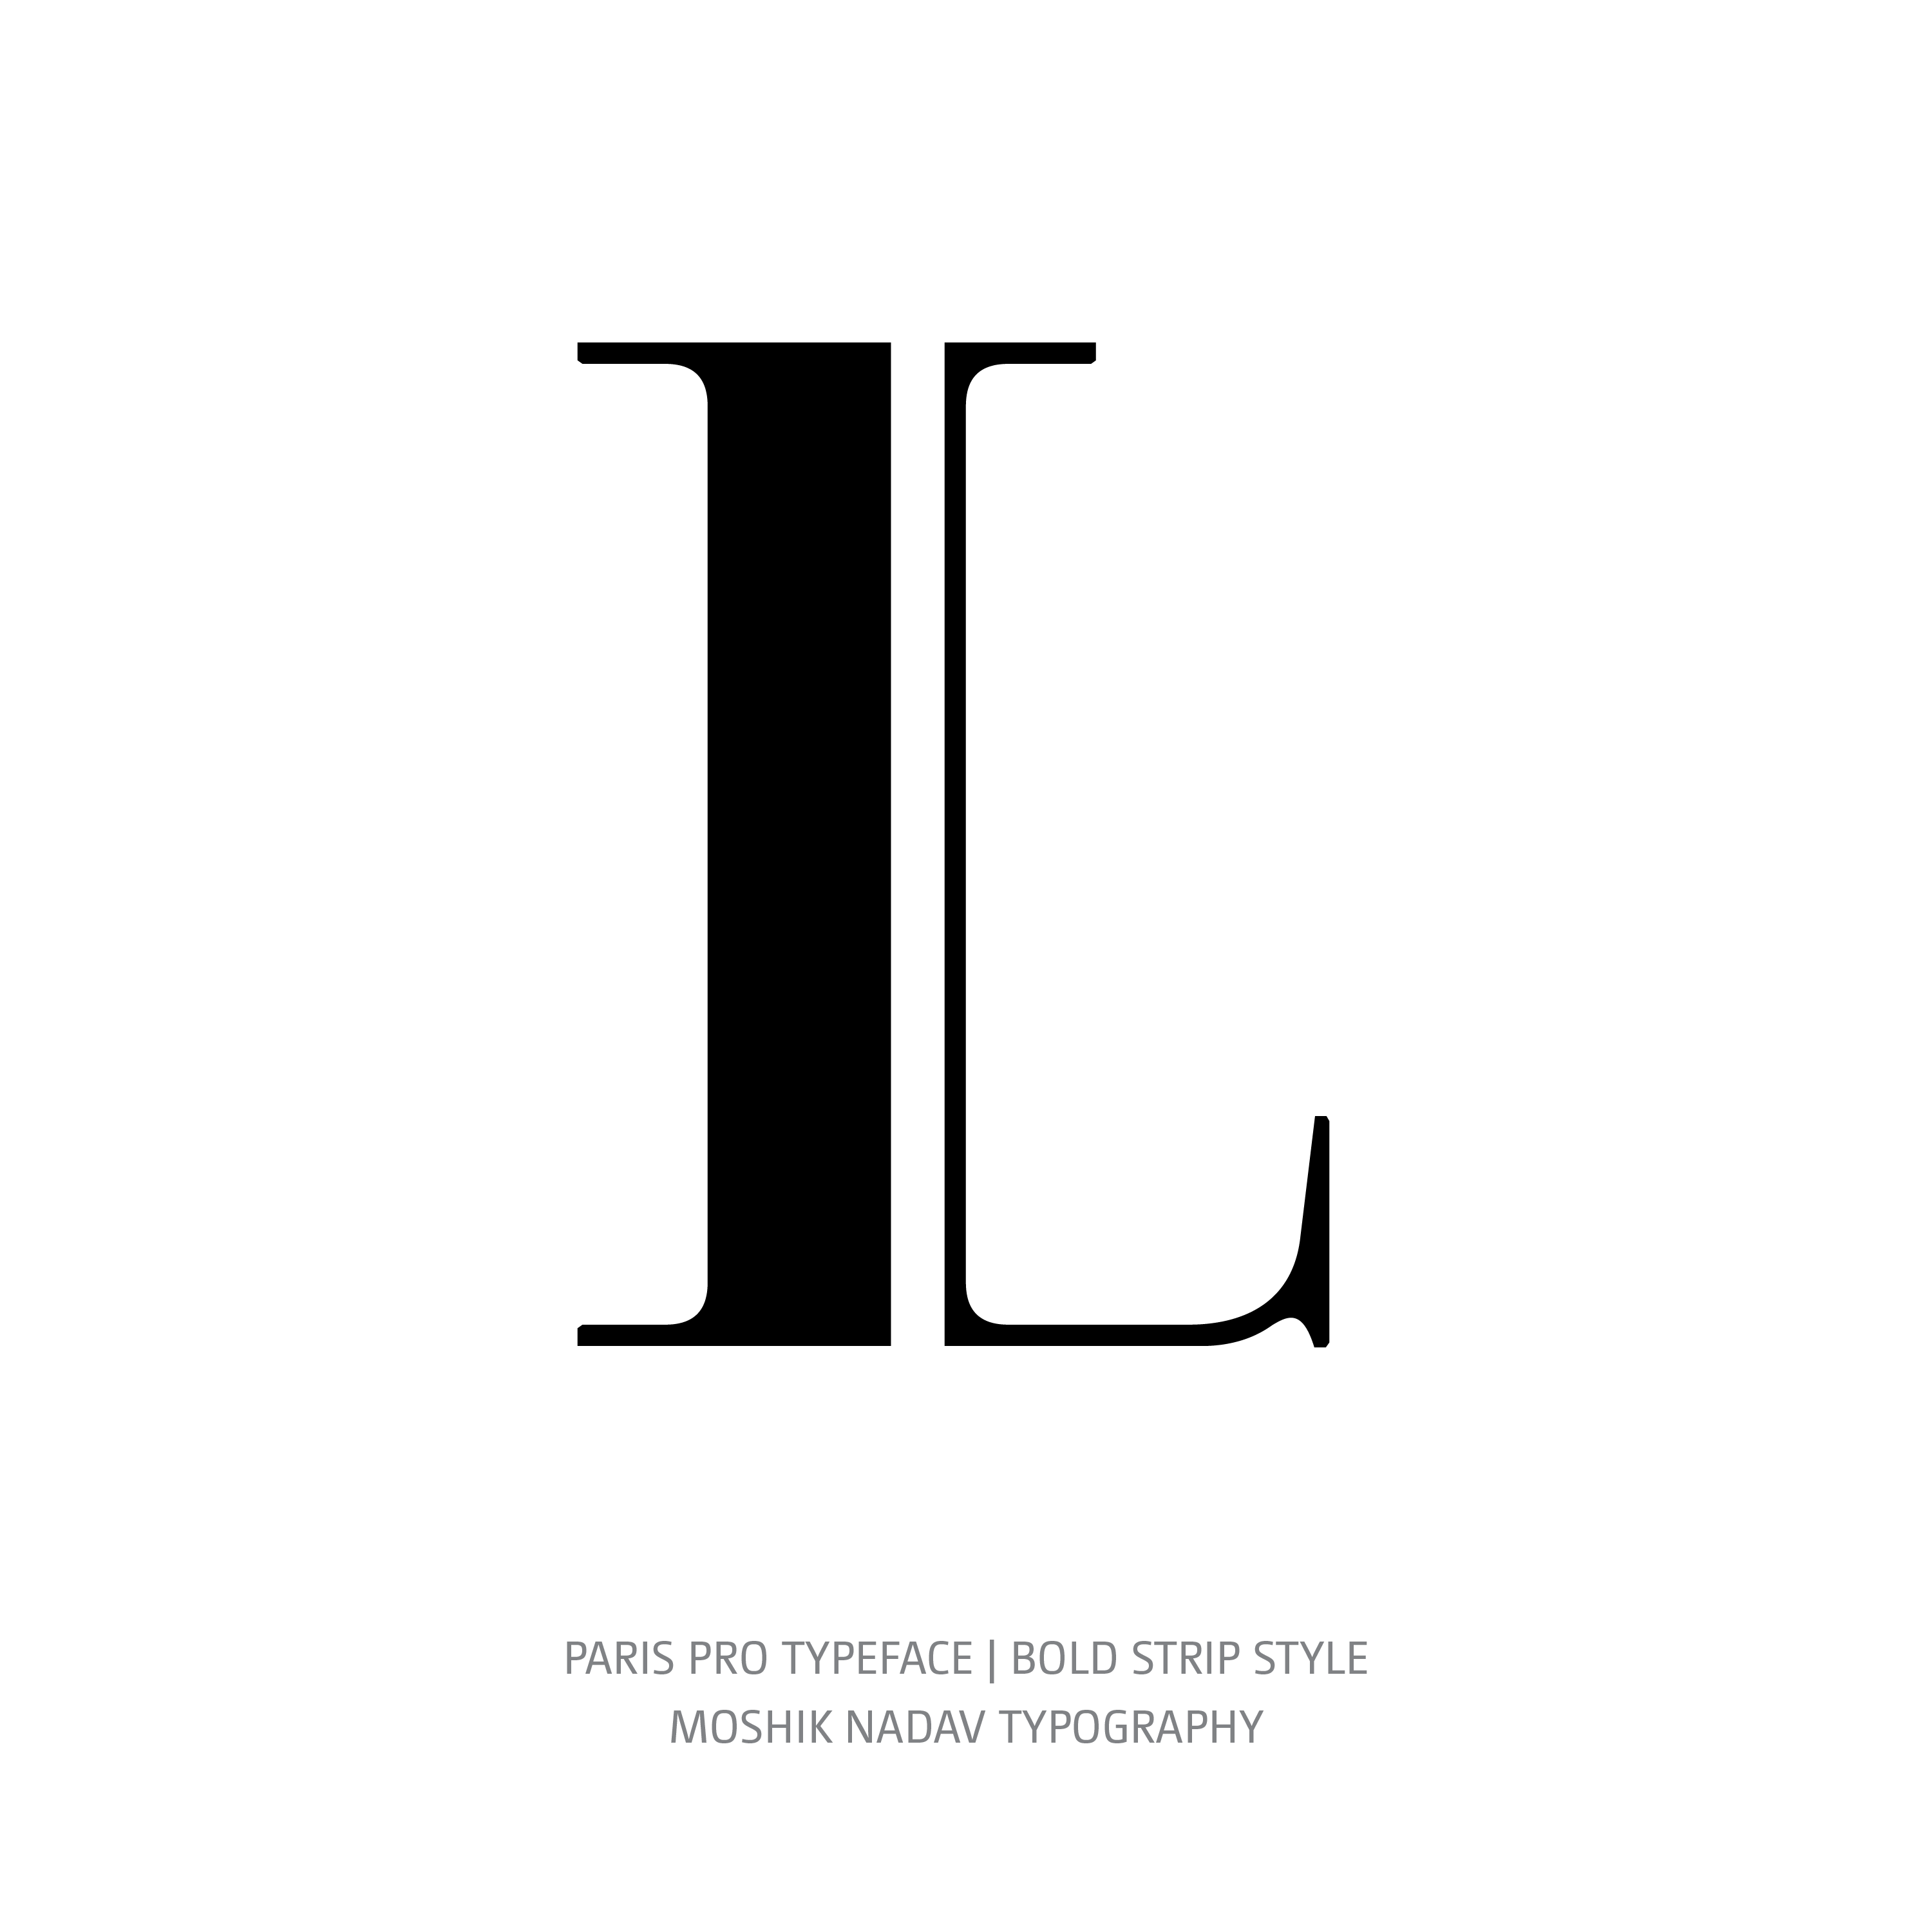 Paris Pro Typeface Bold Strip L